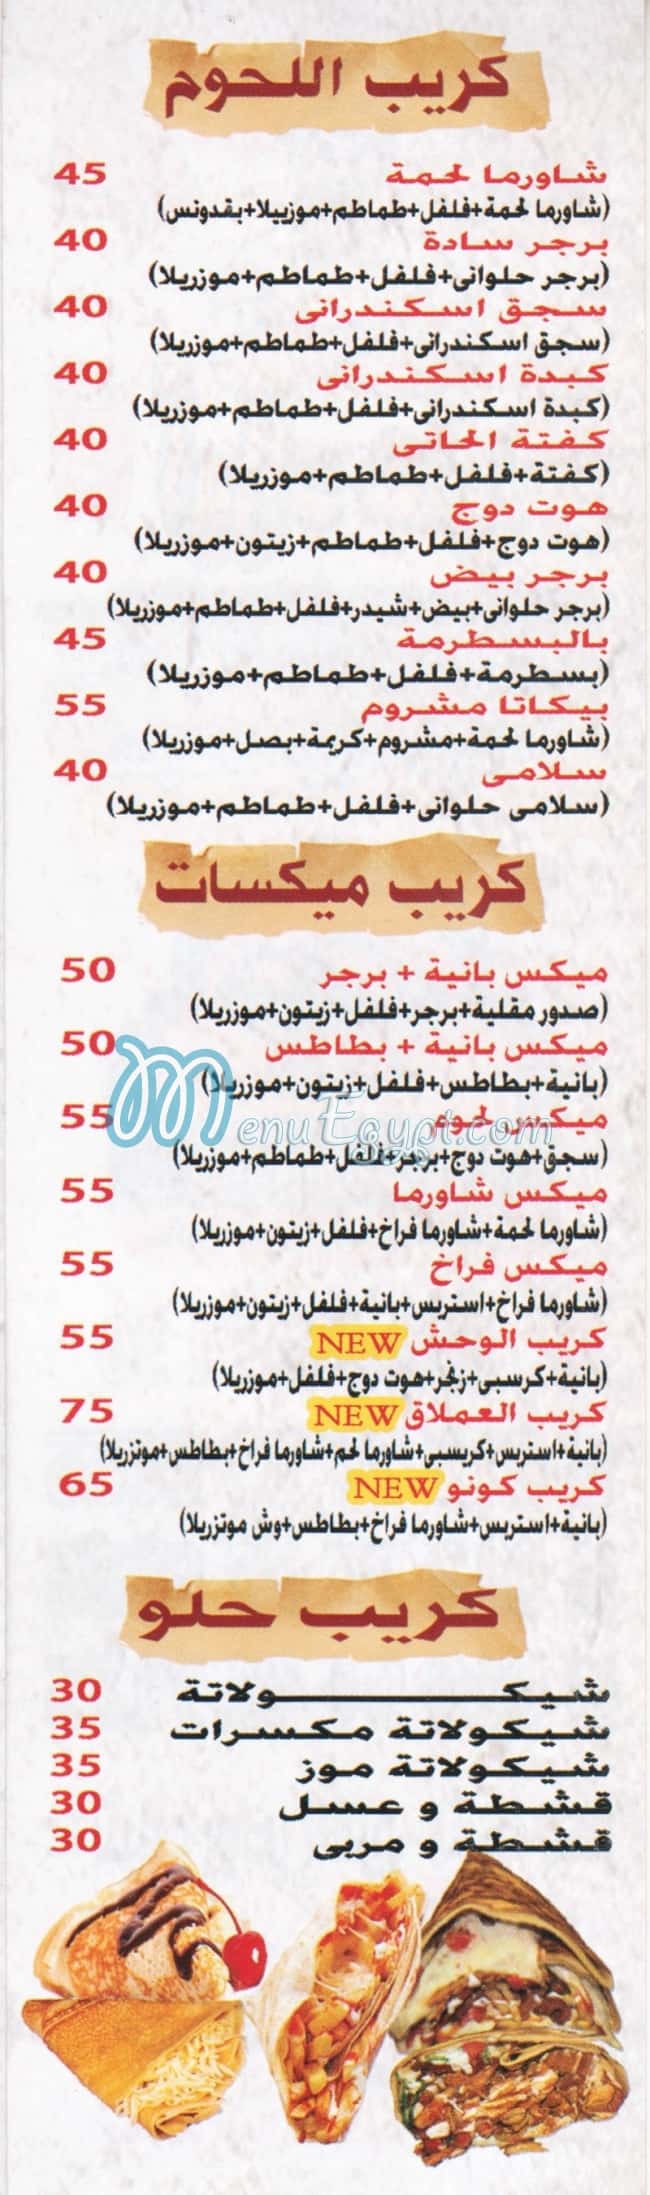 Awlad Ali menu prices